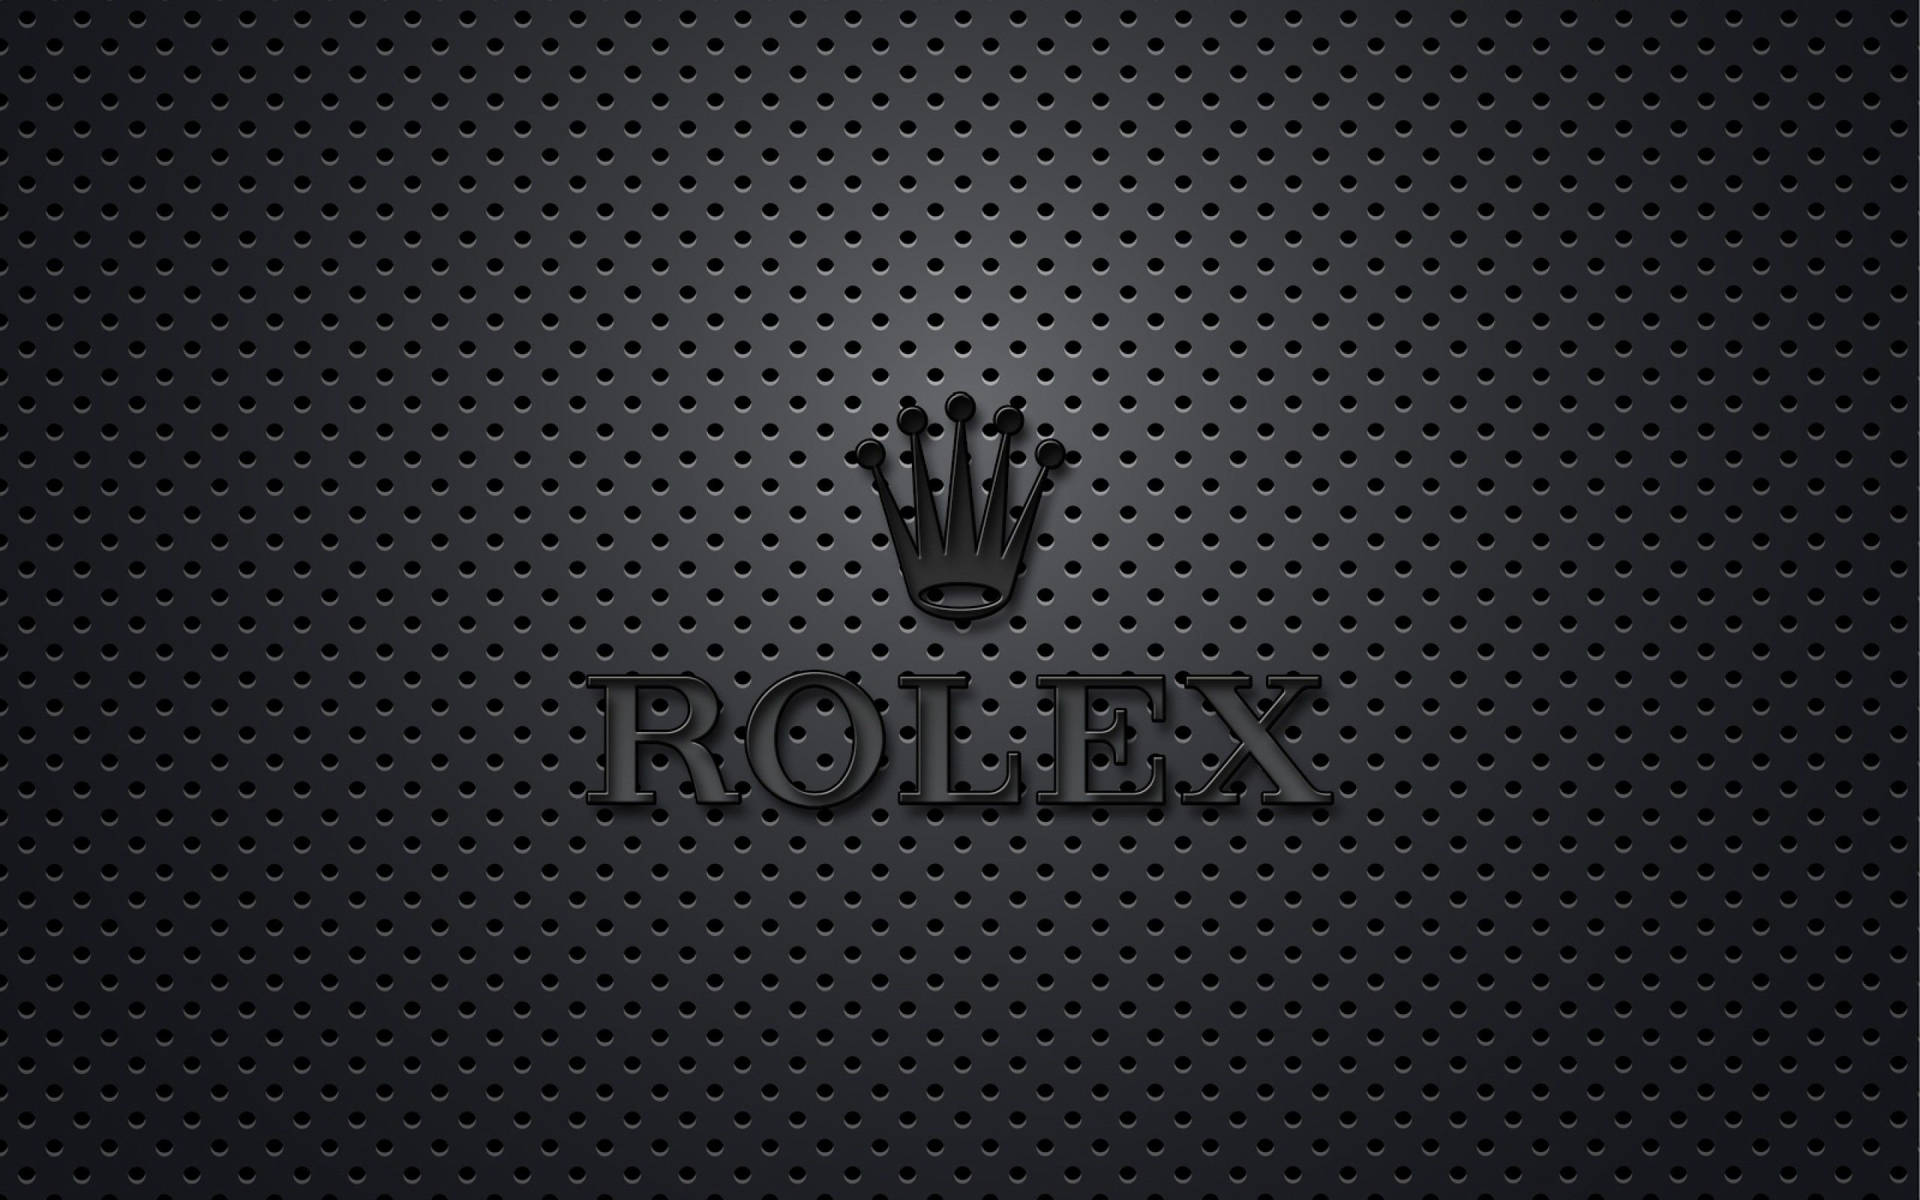 Logode Rolex En Negro Mate Fondo de pantalla